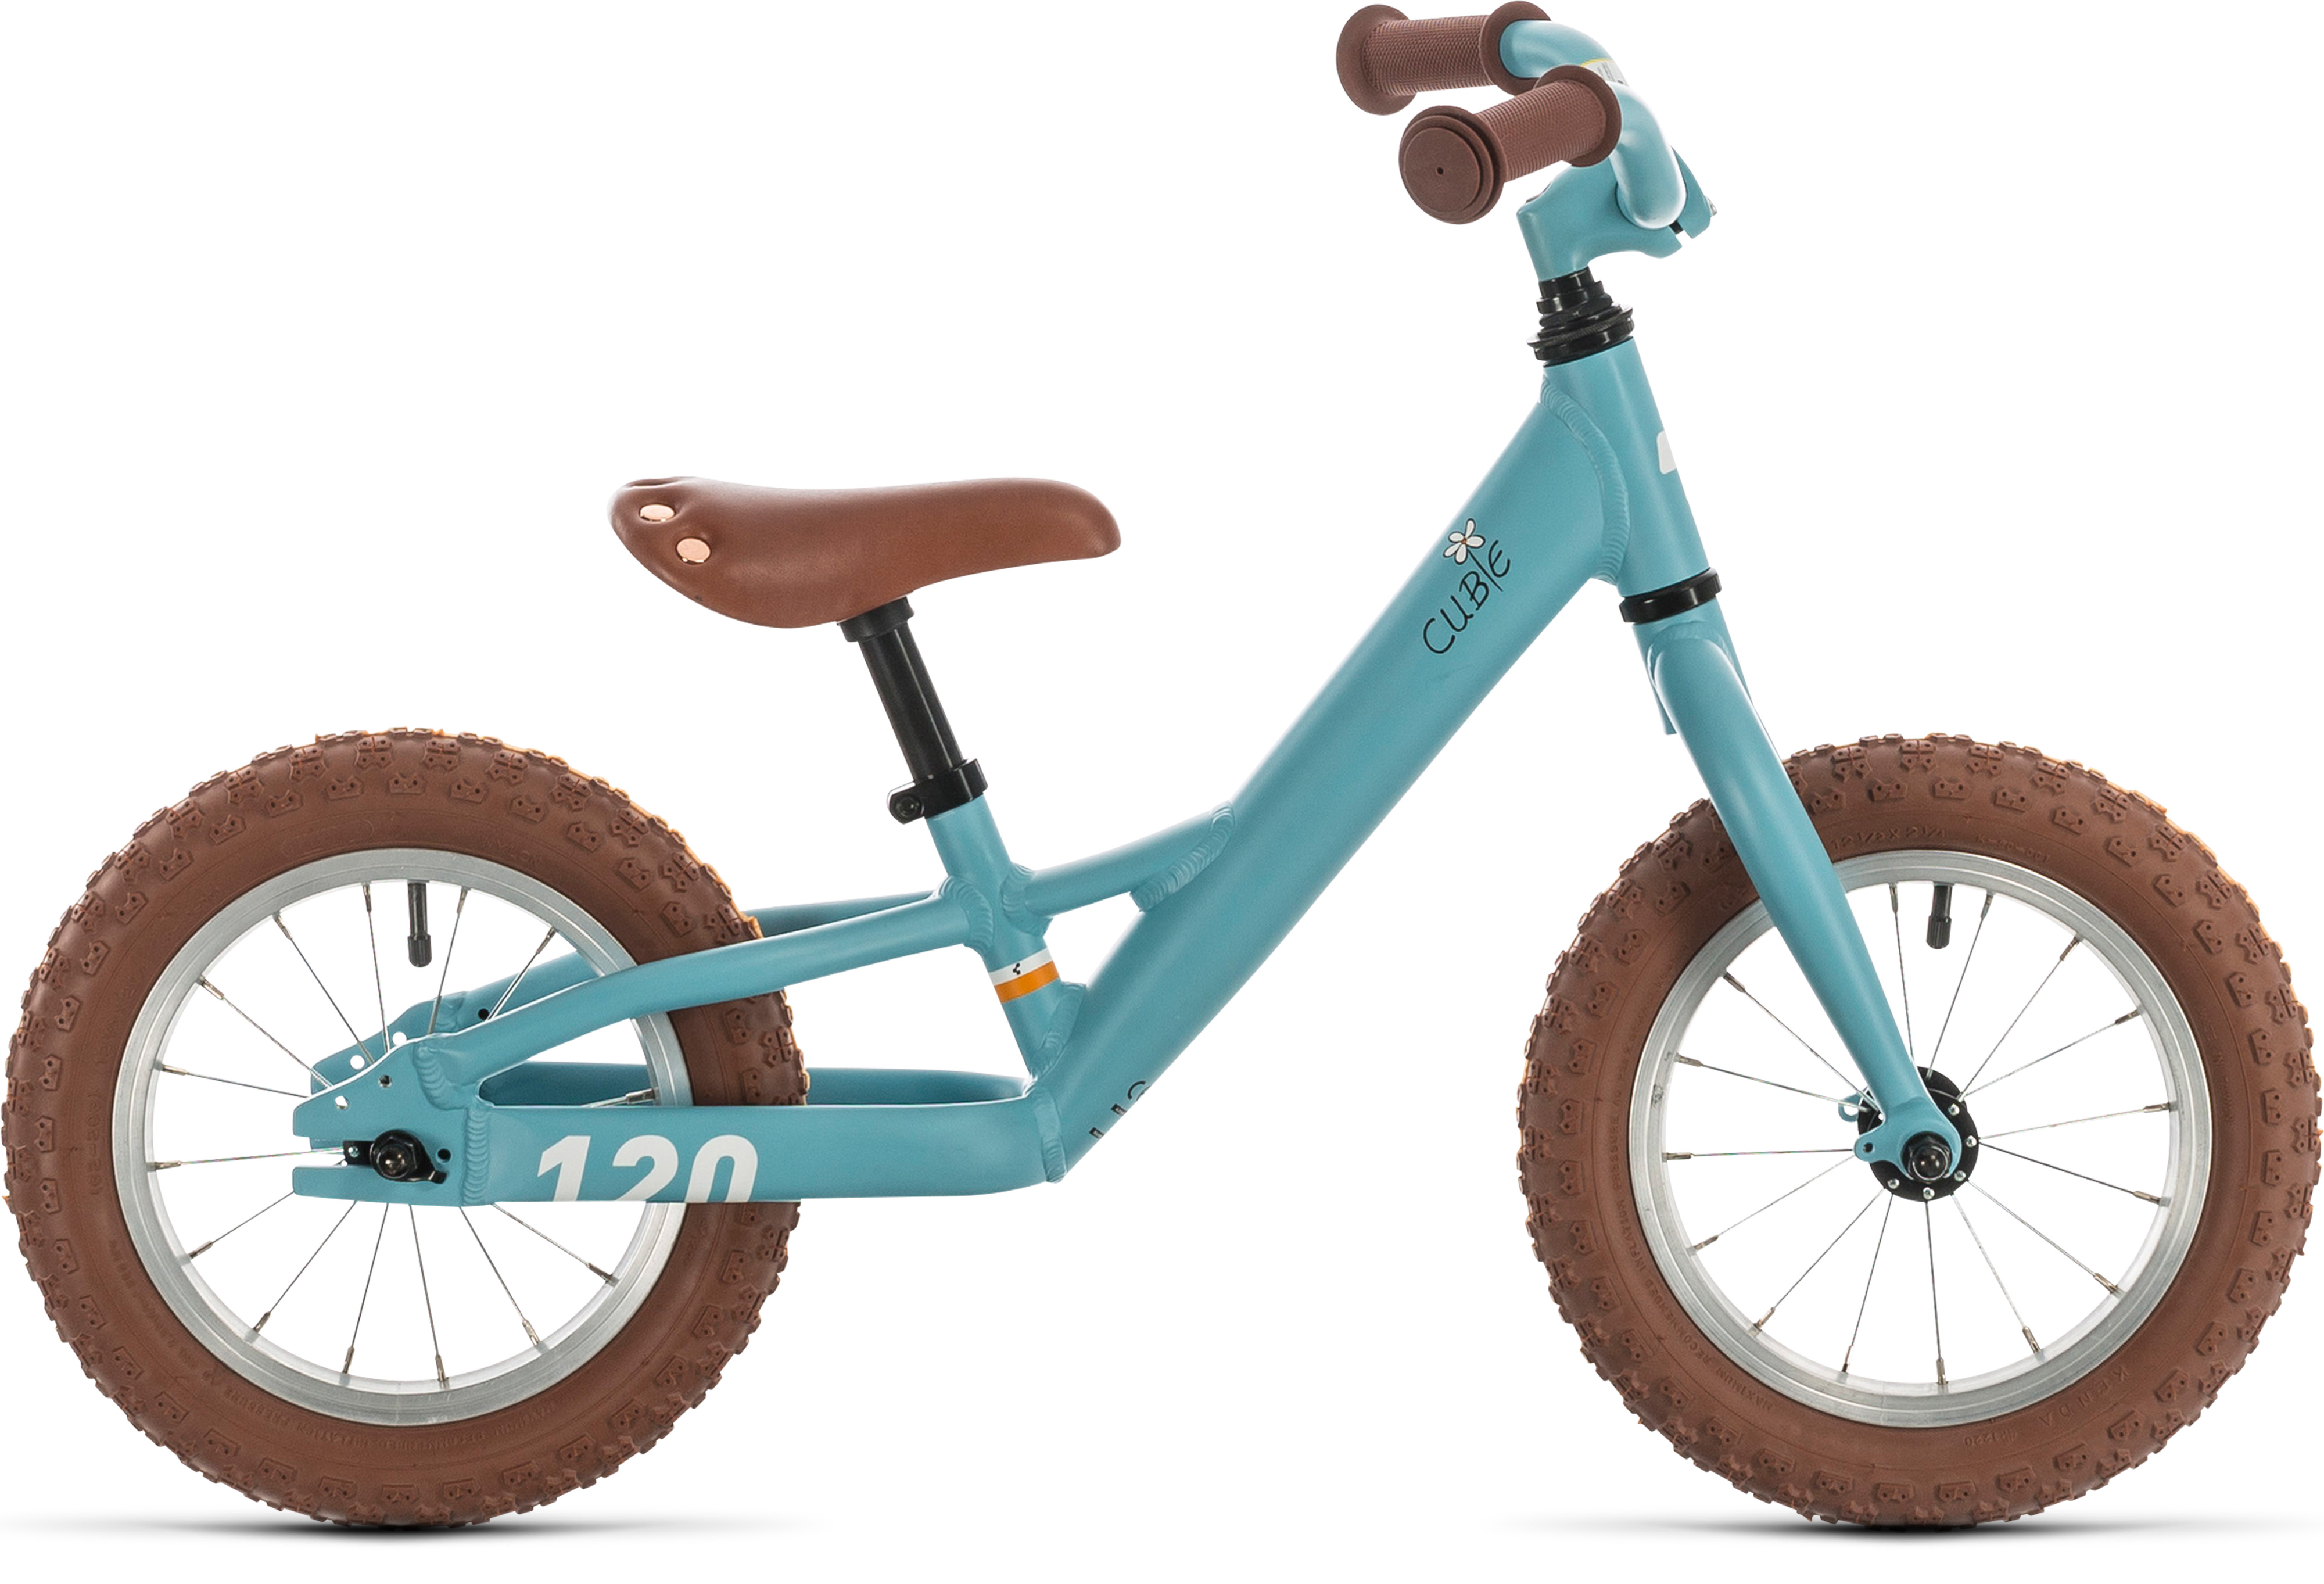  Отзывы о Детском велосипеде Cube Cubie 120 Walk Girl 2020